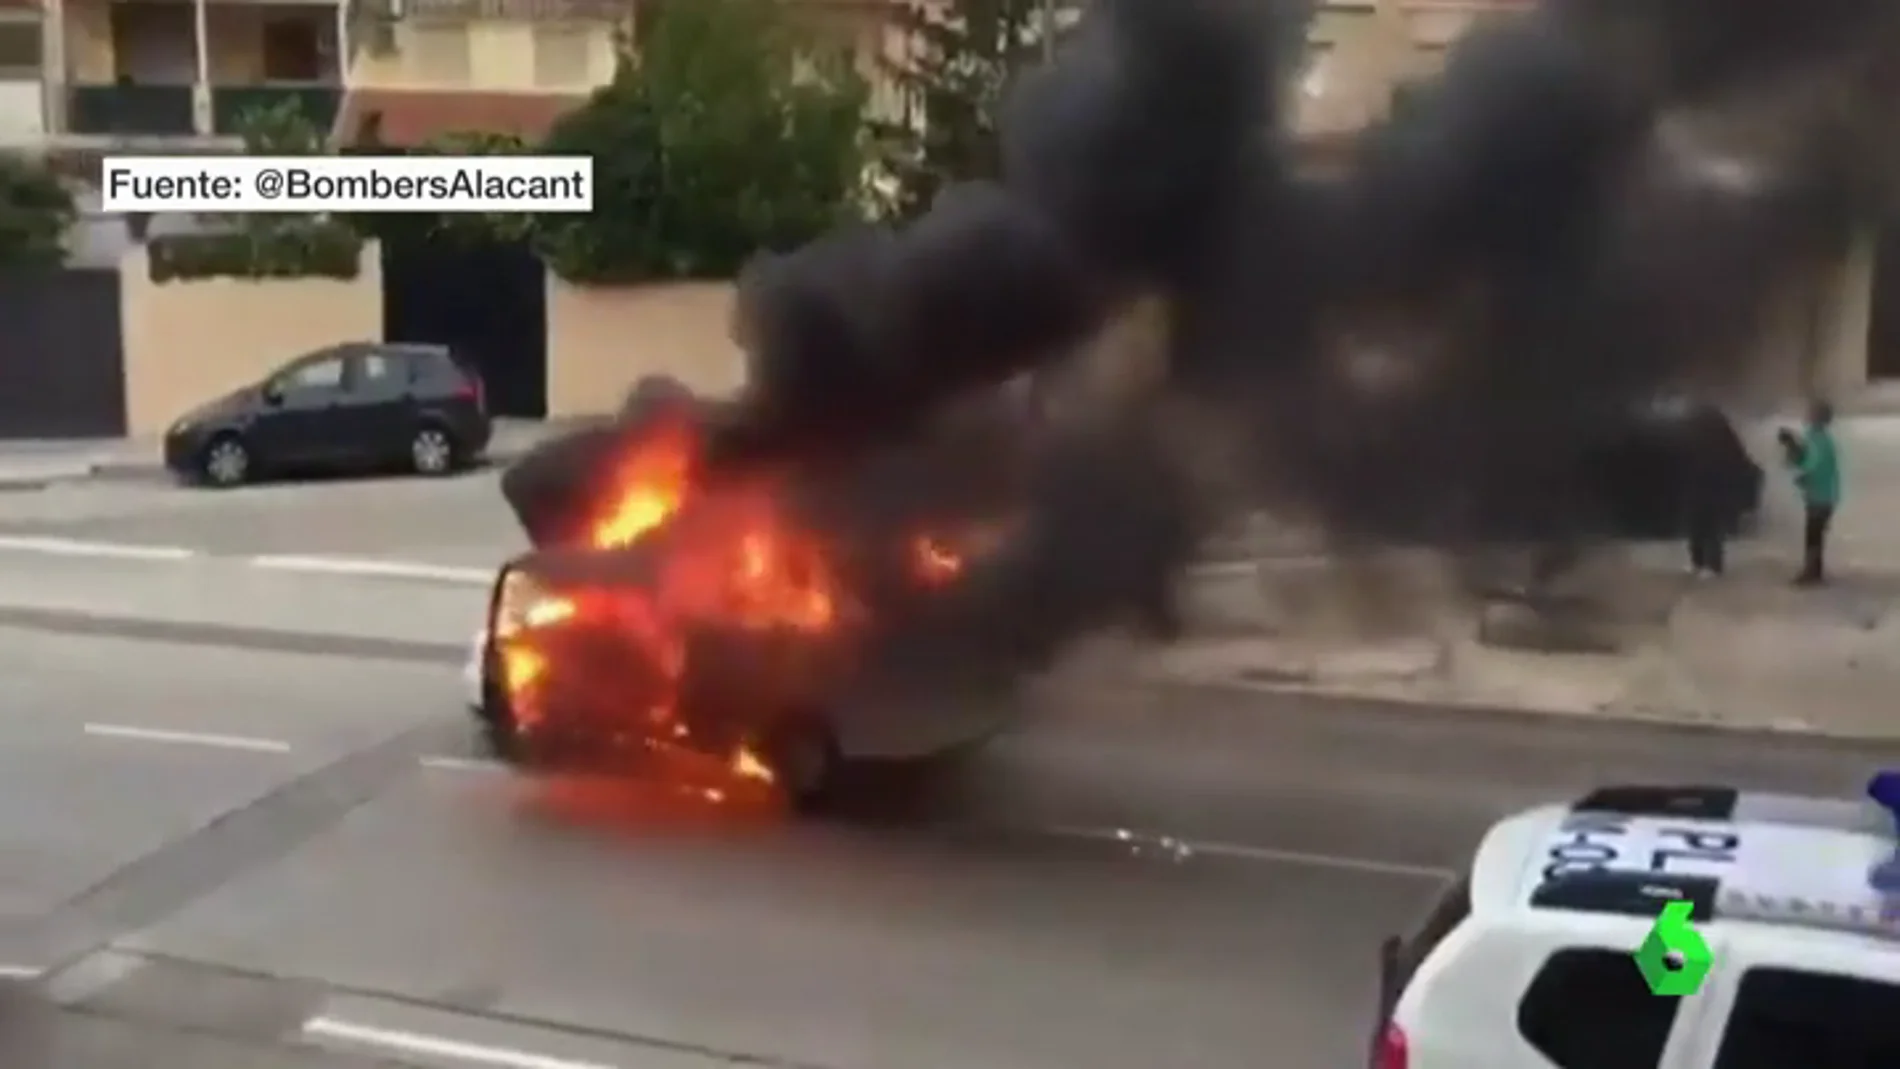 En cocentaina, Alicante, un coche incendia y desciende la calle en llamas